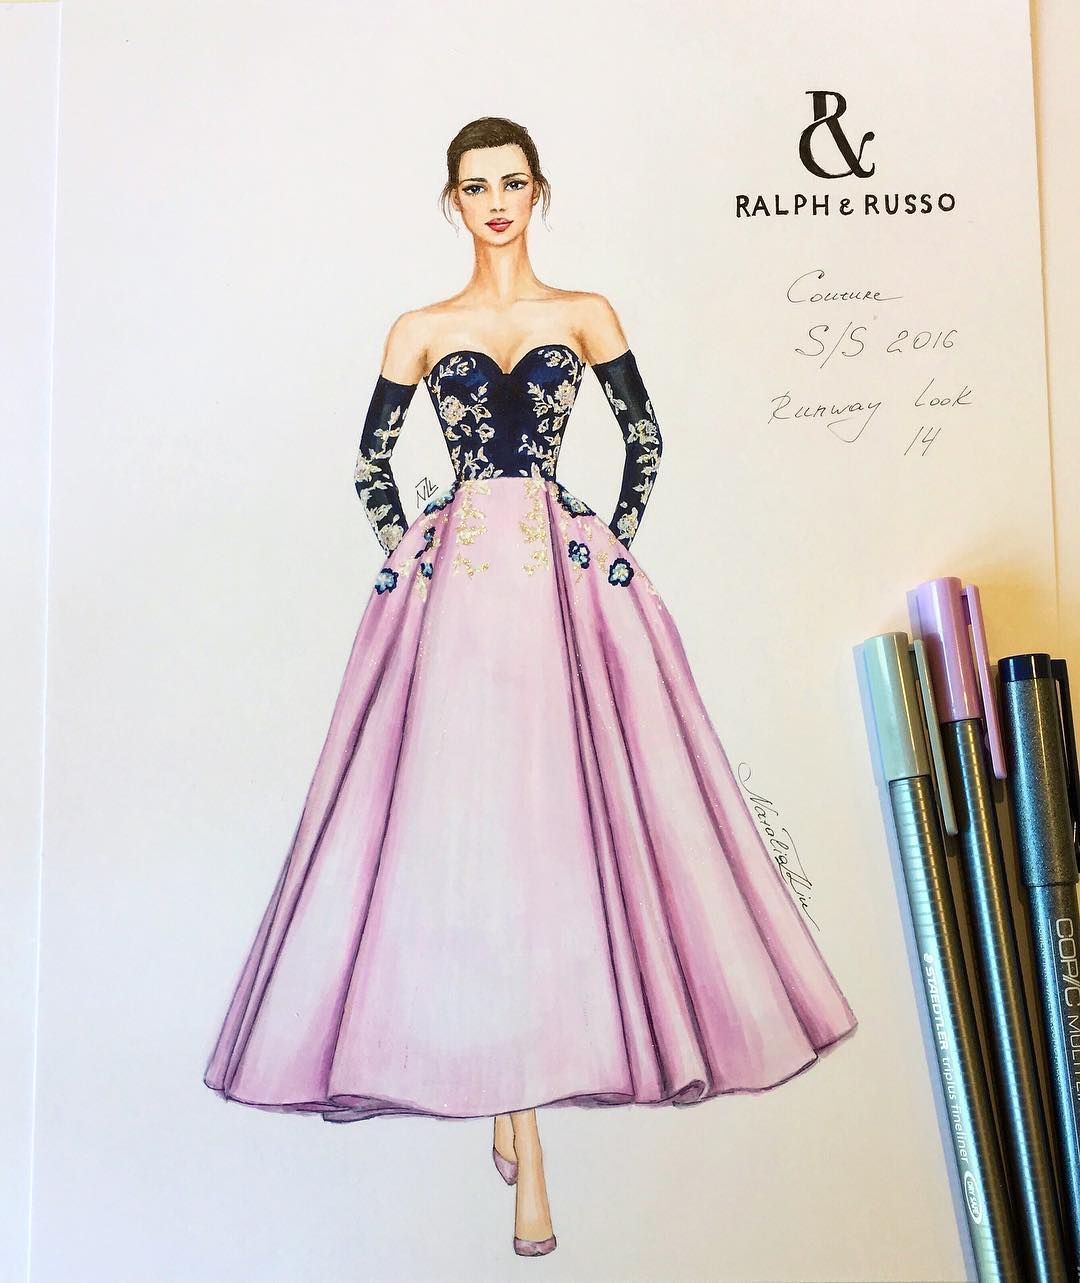 Designing Dress Drawing